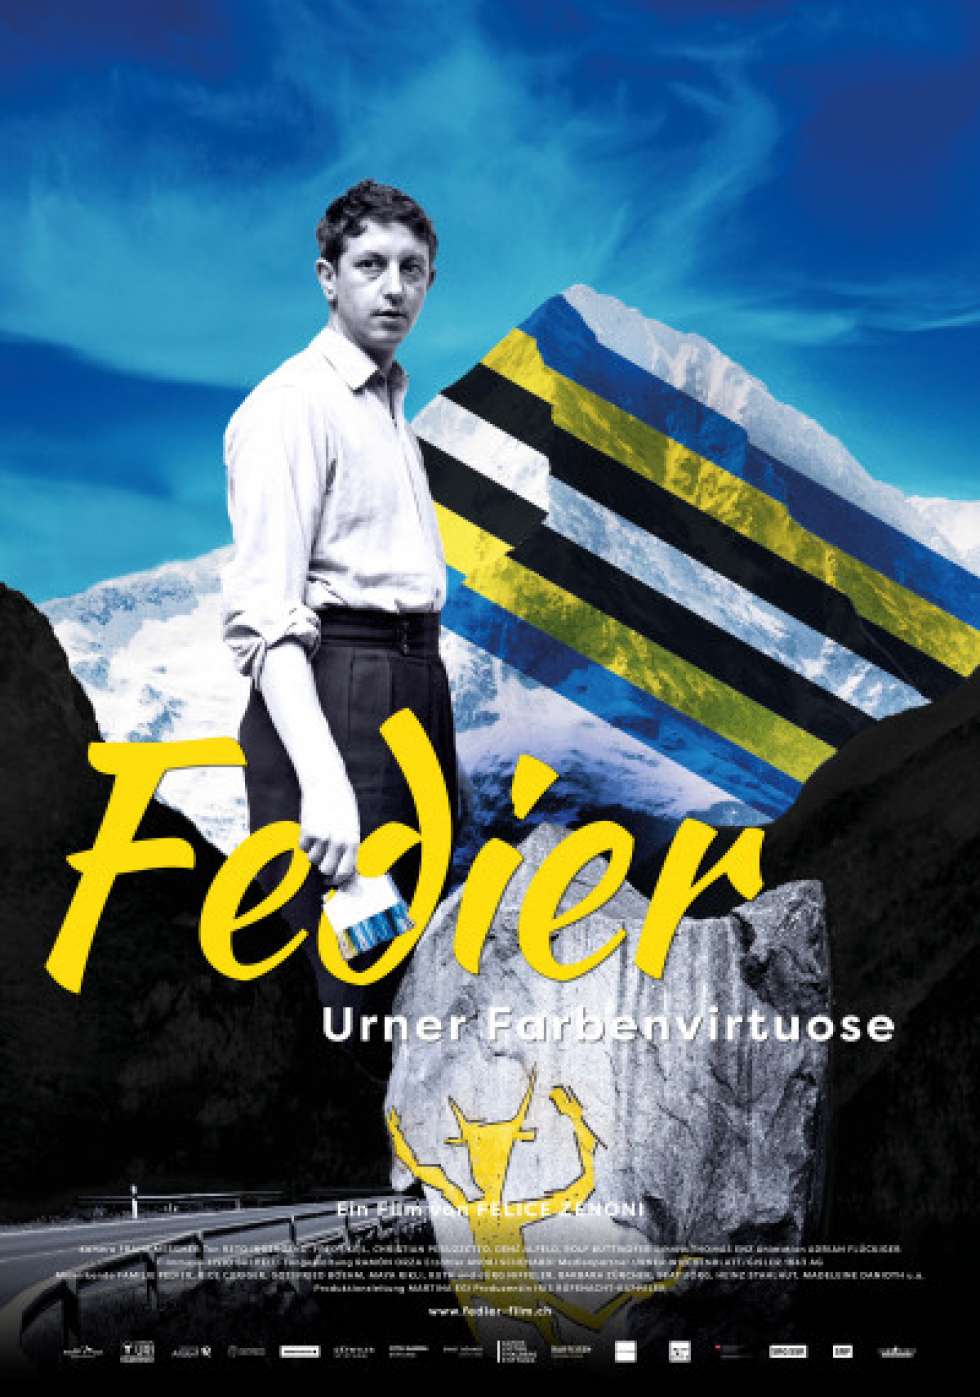 «Fedier – Urner Farbenvirtuose» ist kein Biopic mit Zeigefinger im konventionellen Sinn, sondern ein fesselndes Vermächtnis auf verschiedenen Ebenen. Ein Film, der für sich spricht – durch seine Bilder.